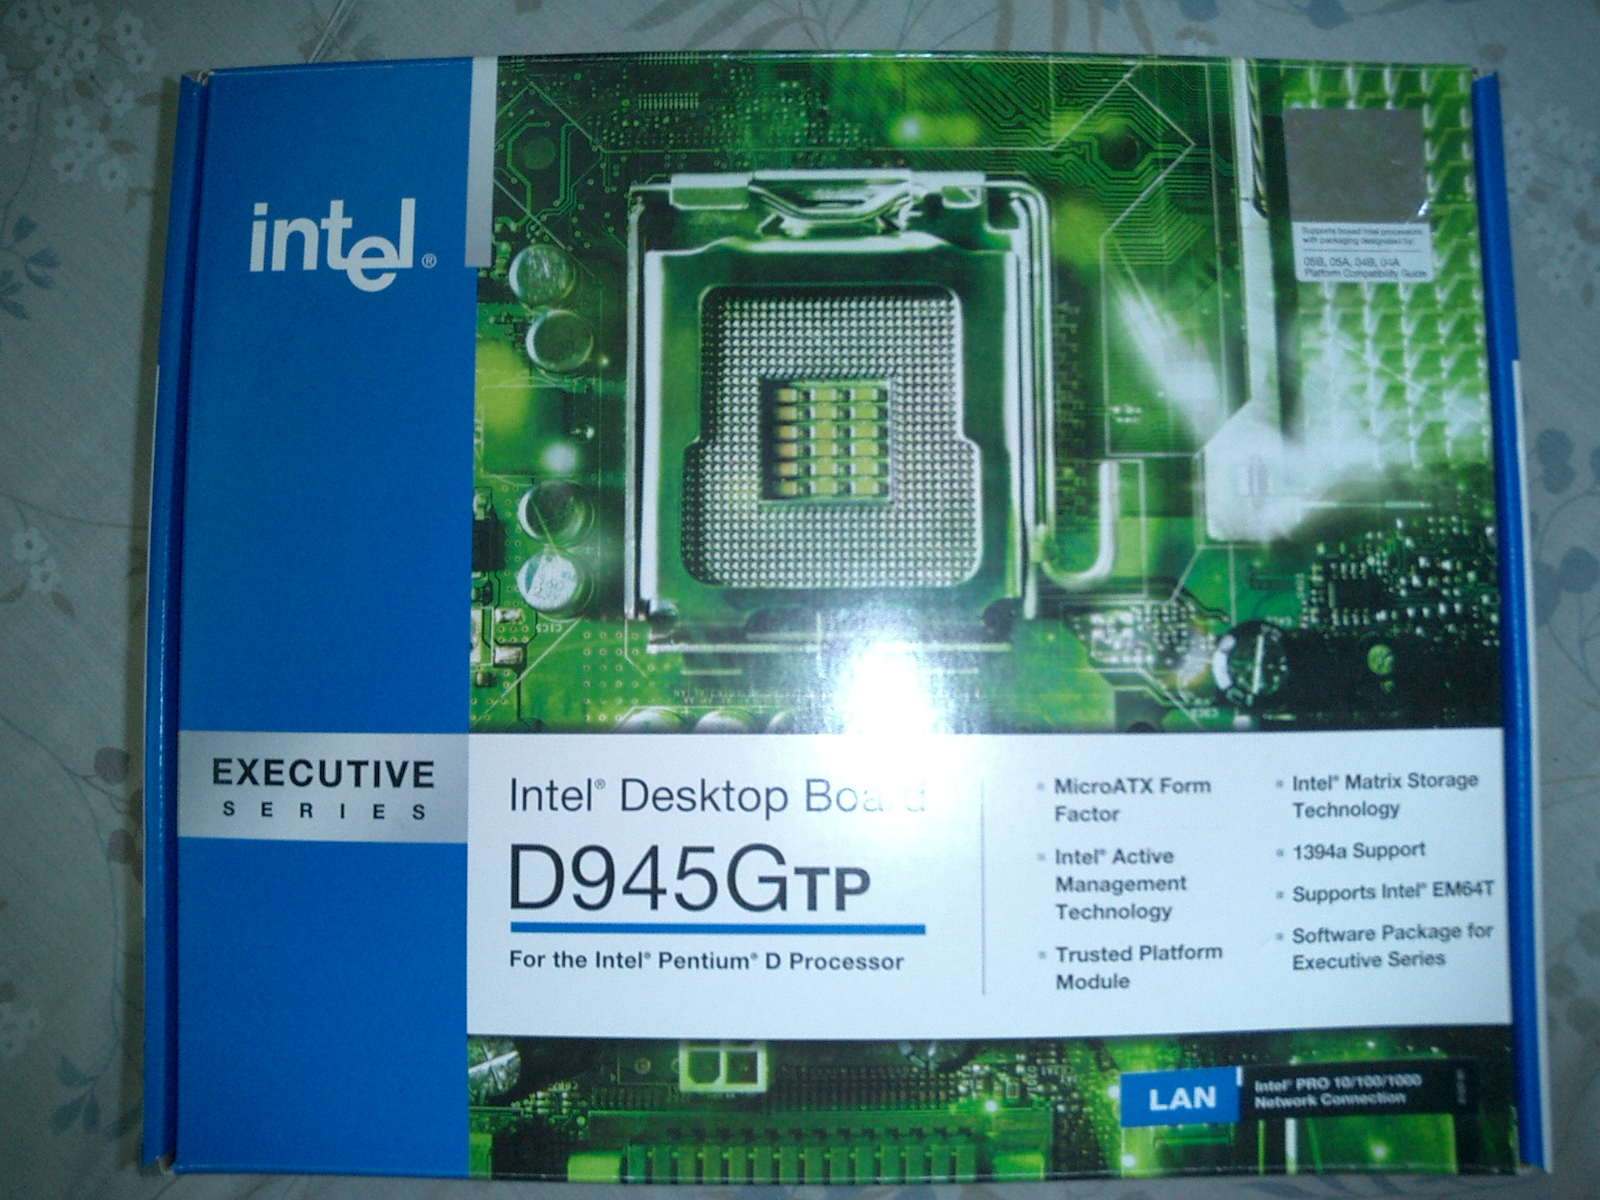 Intel desktop board d945gtp